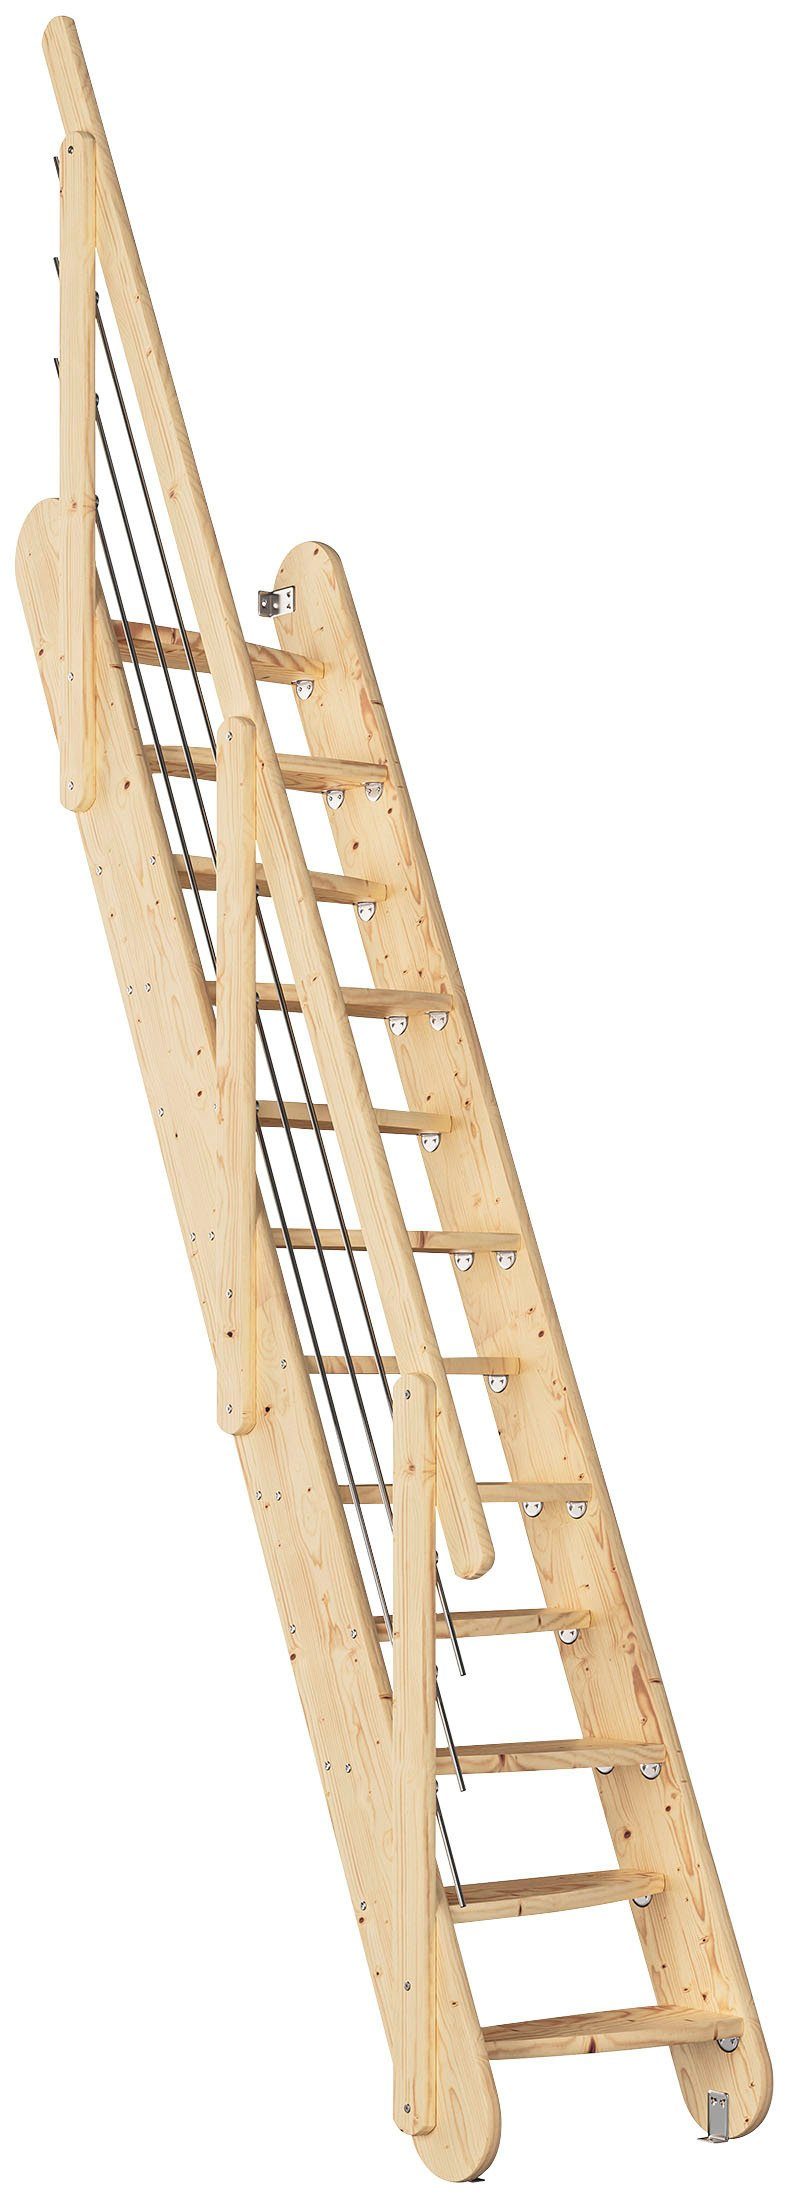 Dolle Raumspartreppe Bern, für Geschosshöhen bis 285 cm, Stufen offen, Holzkomponenten unbehandelt, Breite 63 cm, Stufen leicht abgerundet